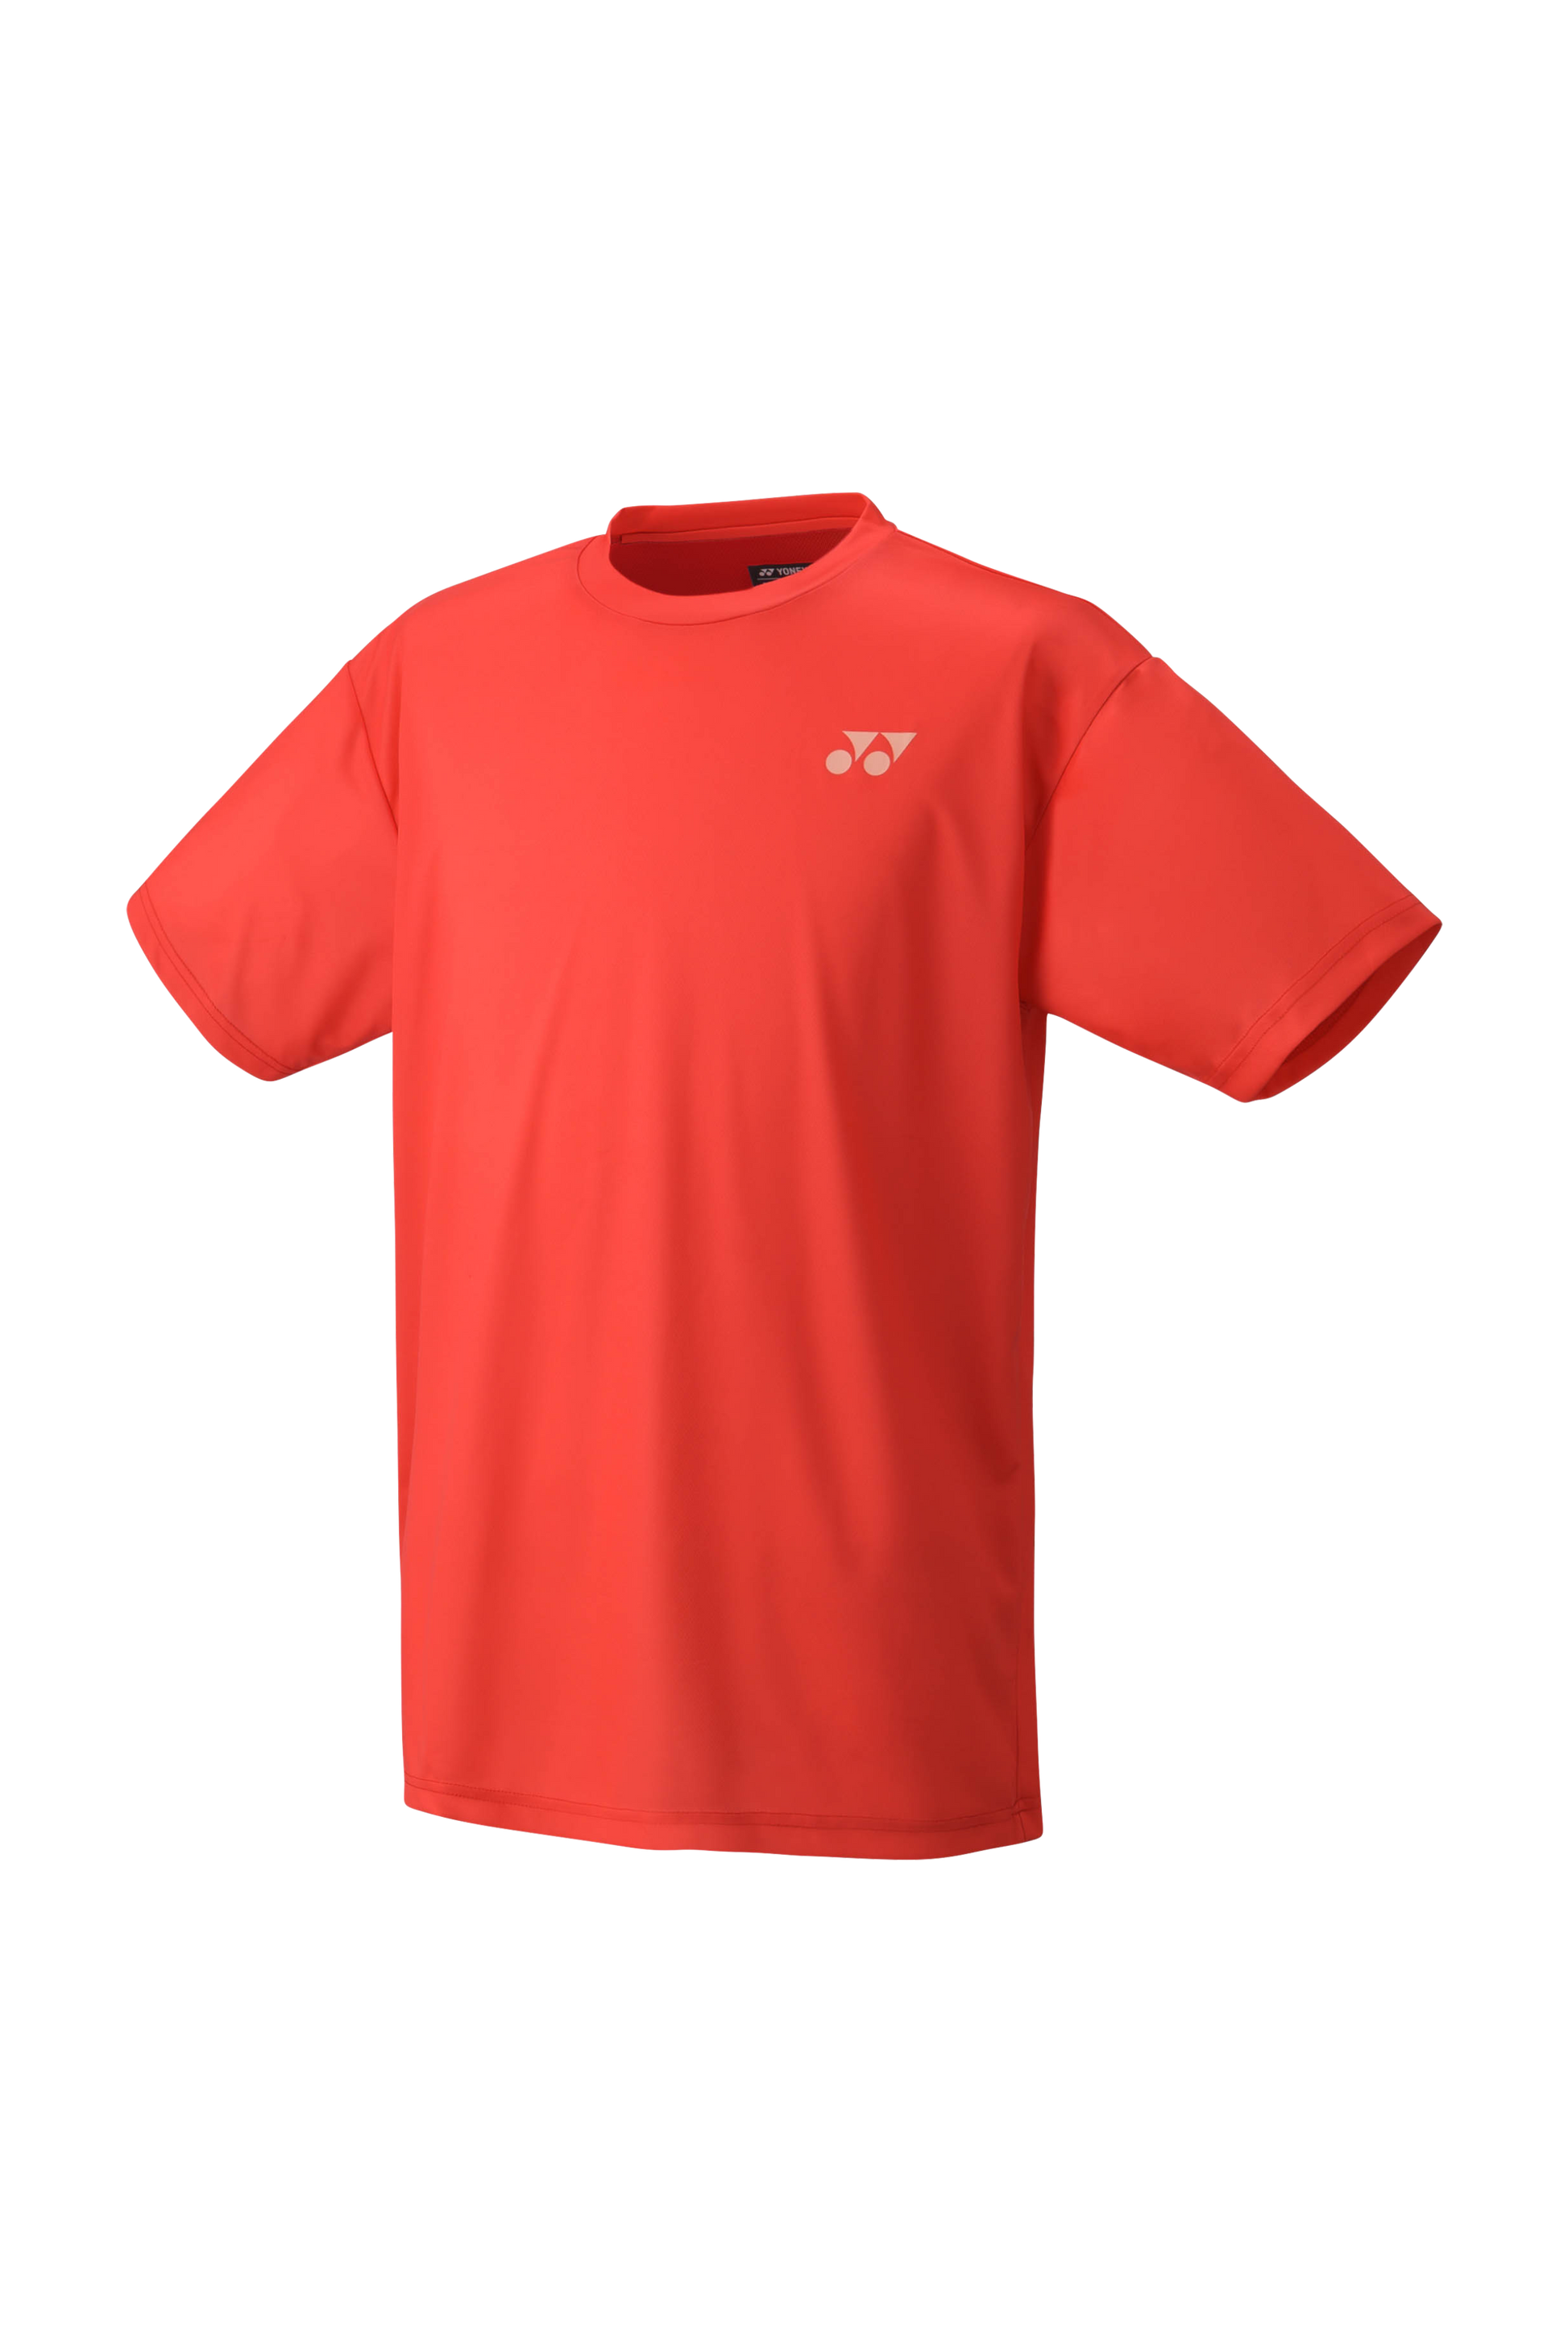 YONEX Unisex T-Shirts YM0045 - Max Sports